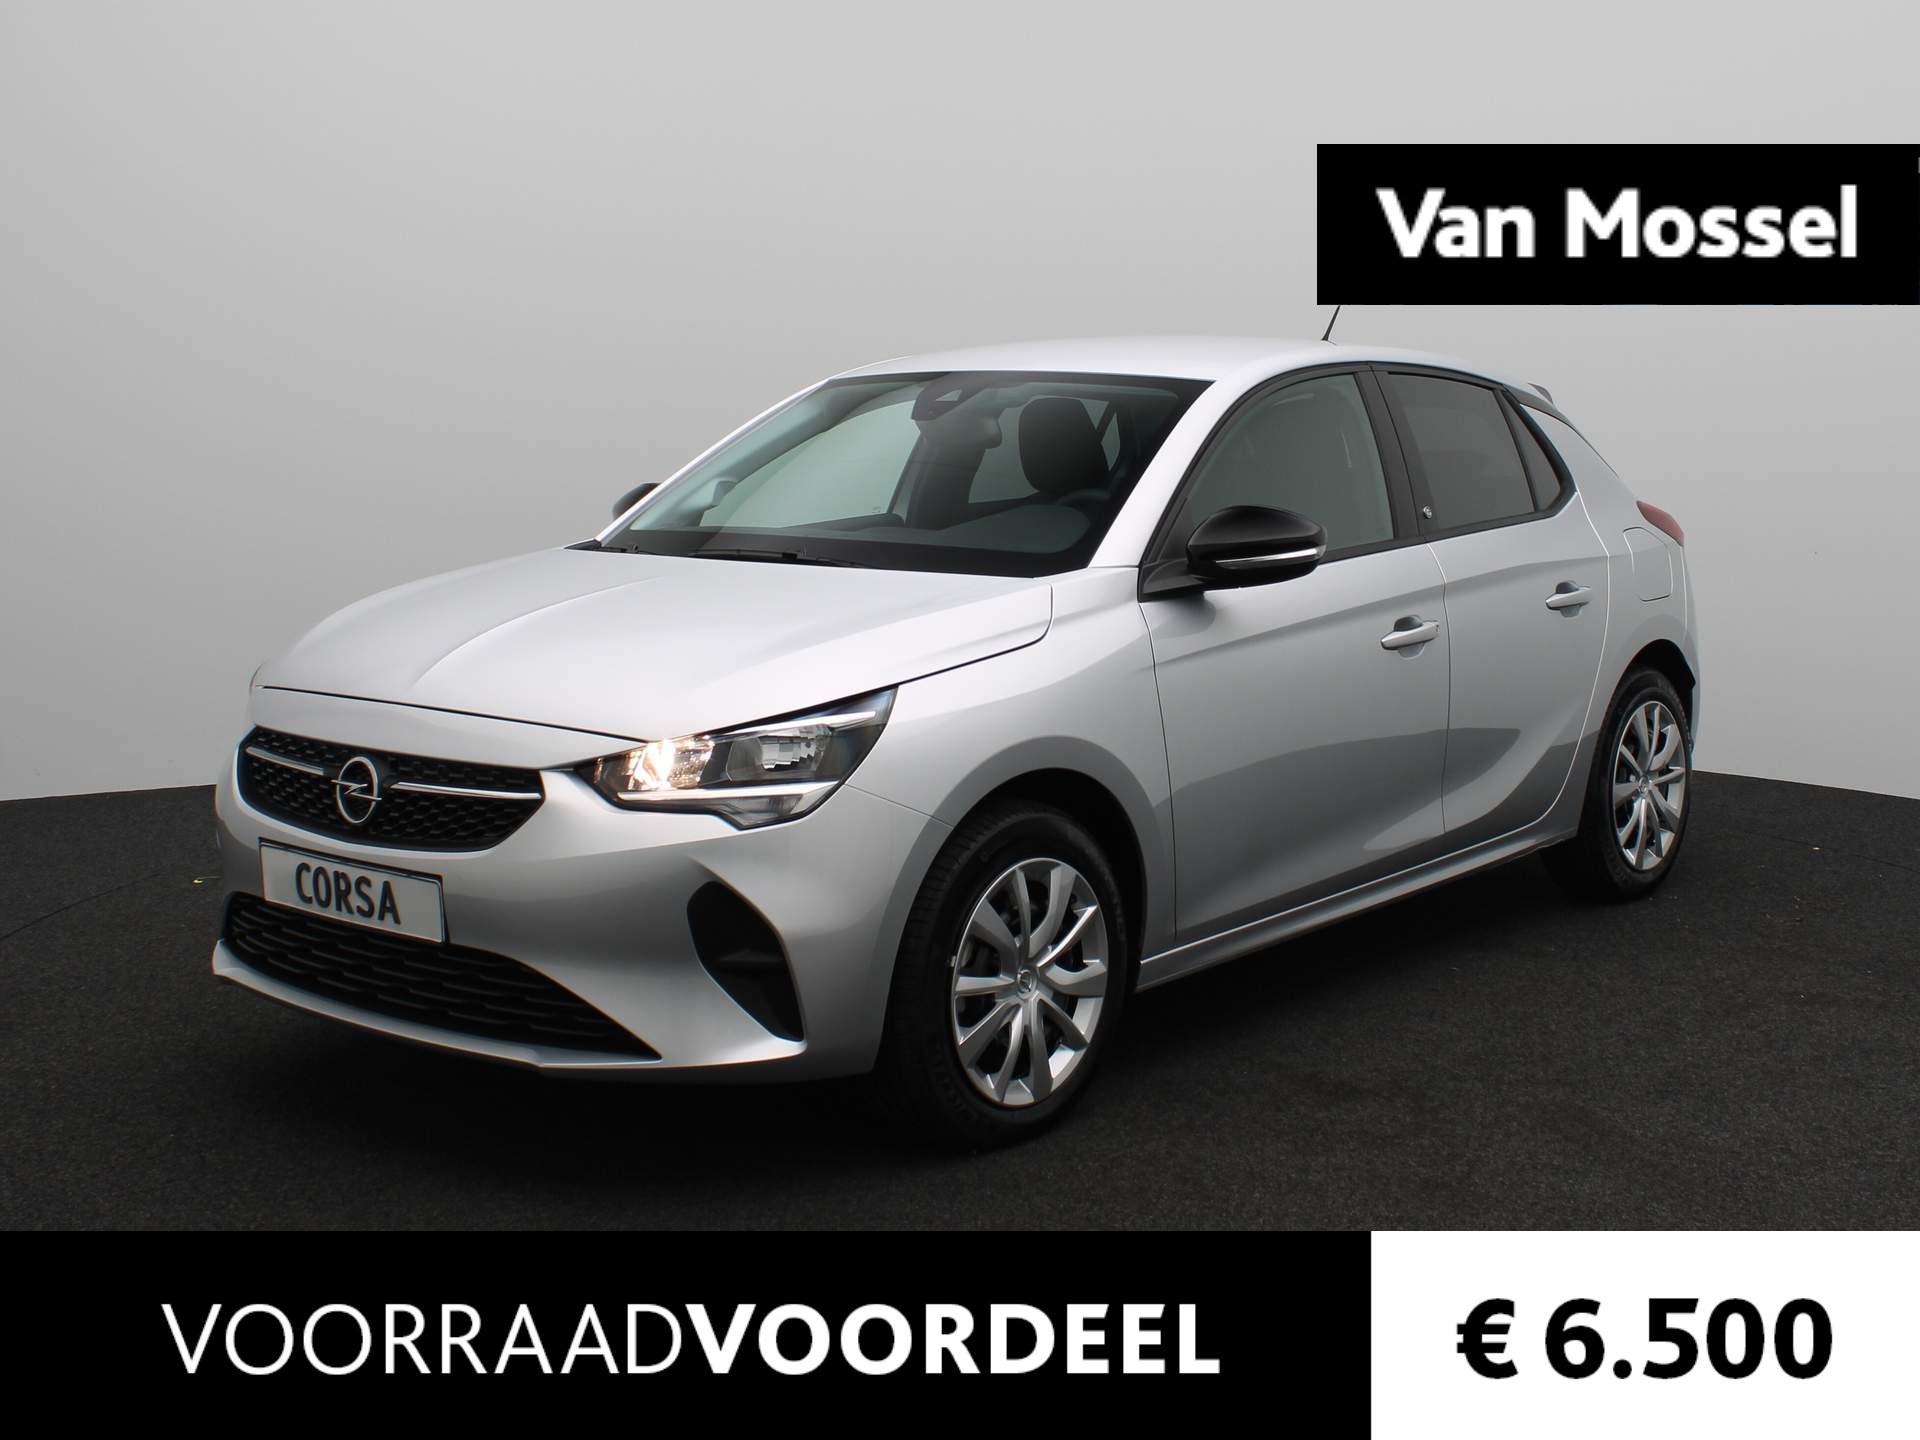 Opel Corsa-e Level 2 50 kWh || VAN MOSSEL VOORRAADVOORDEEL ||